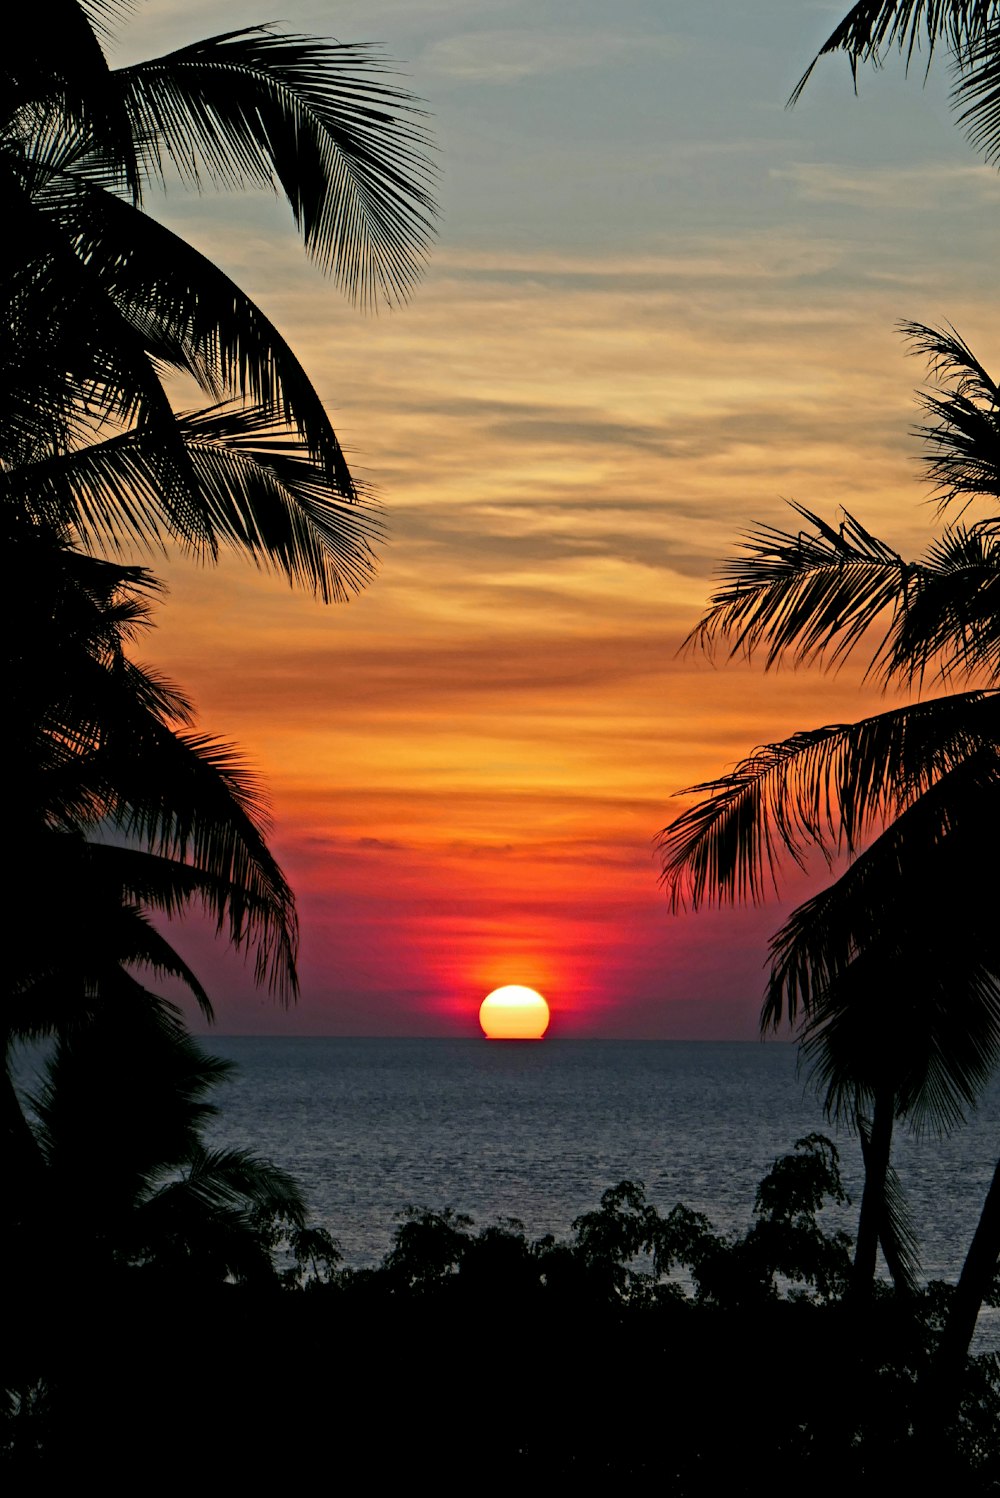 albero di cocco vicino al mare durante il tramonto